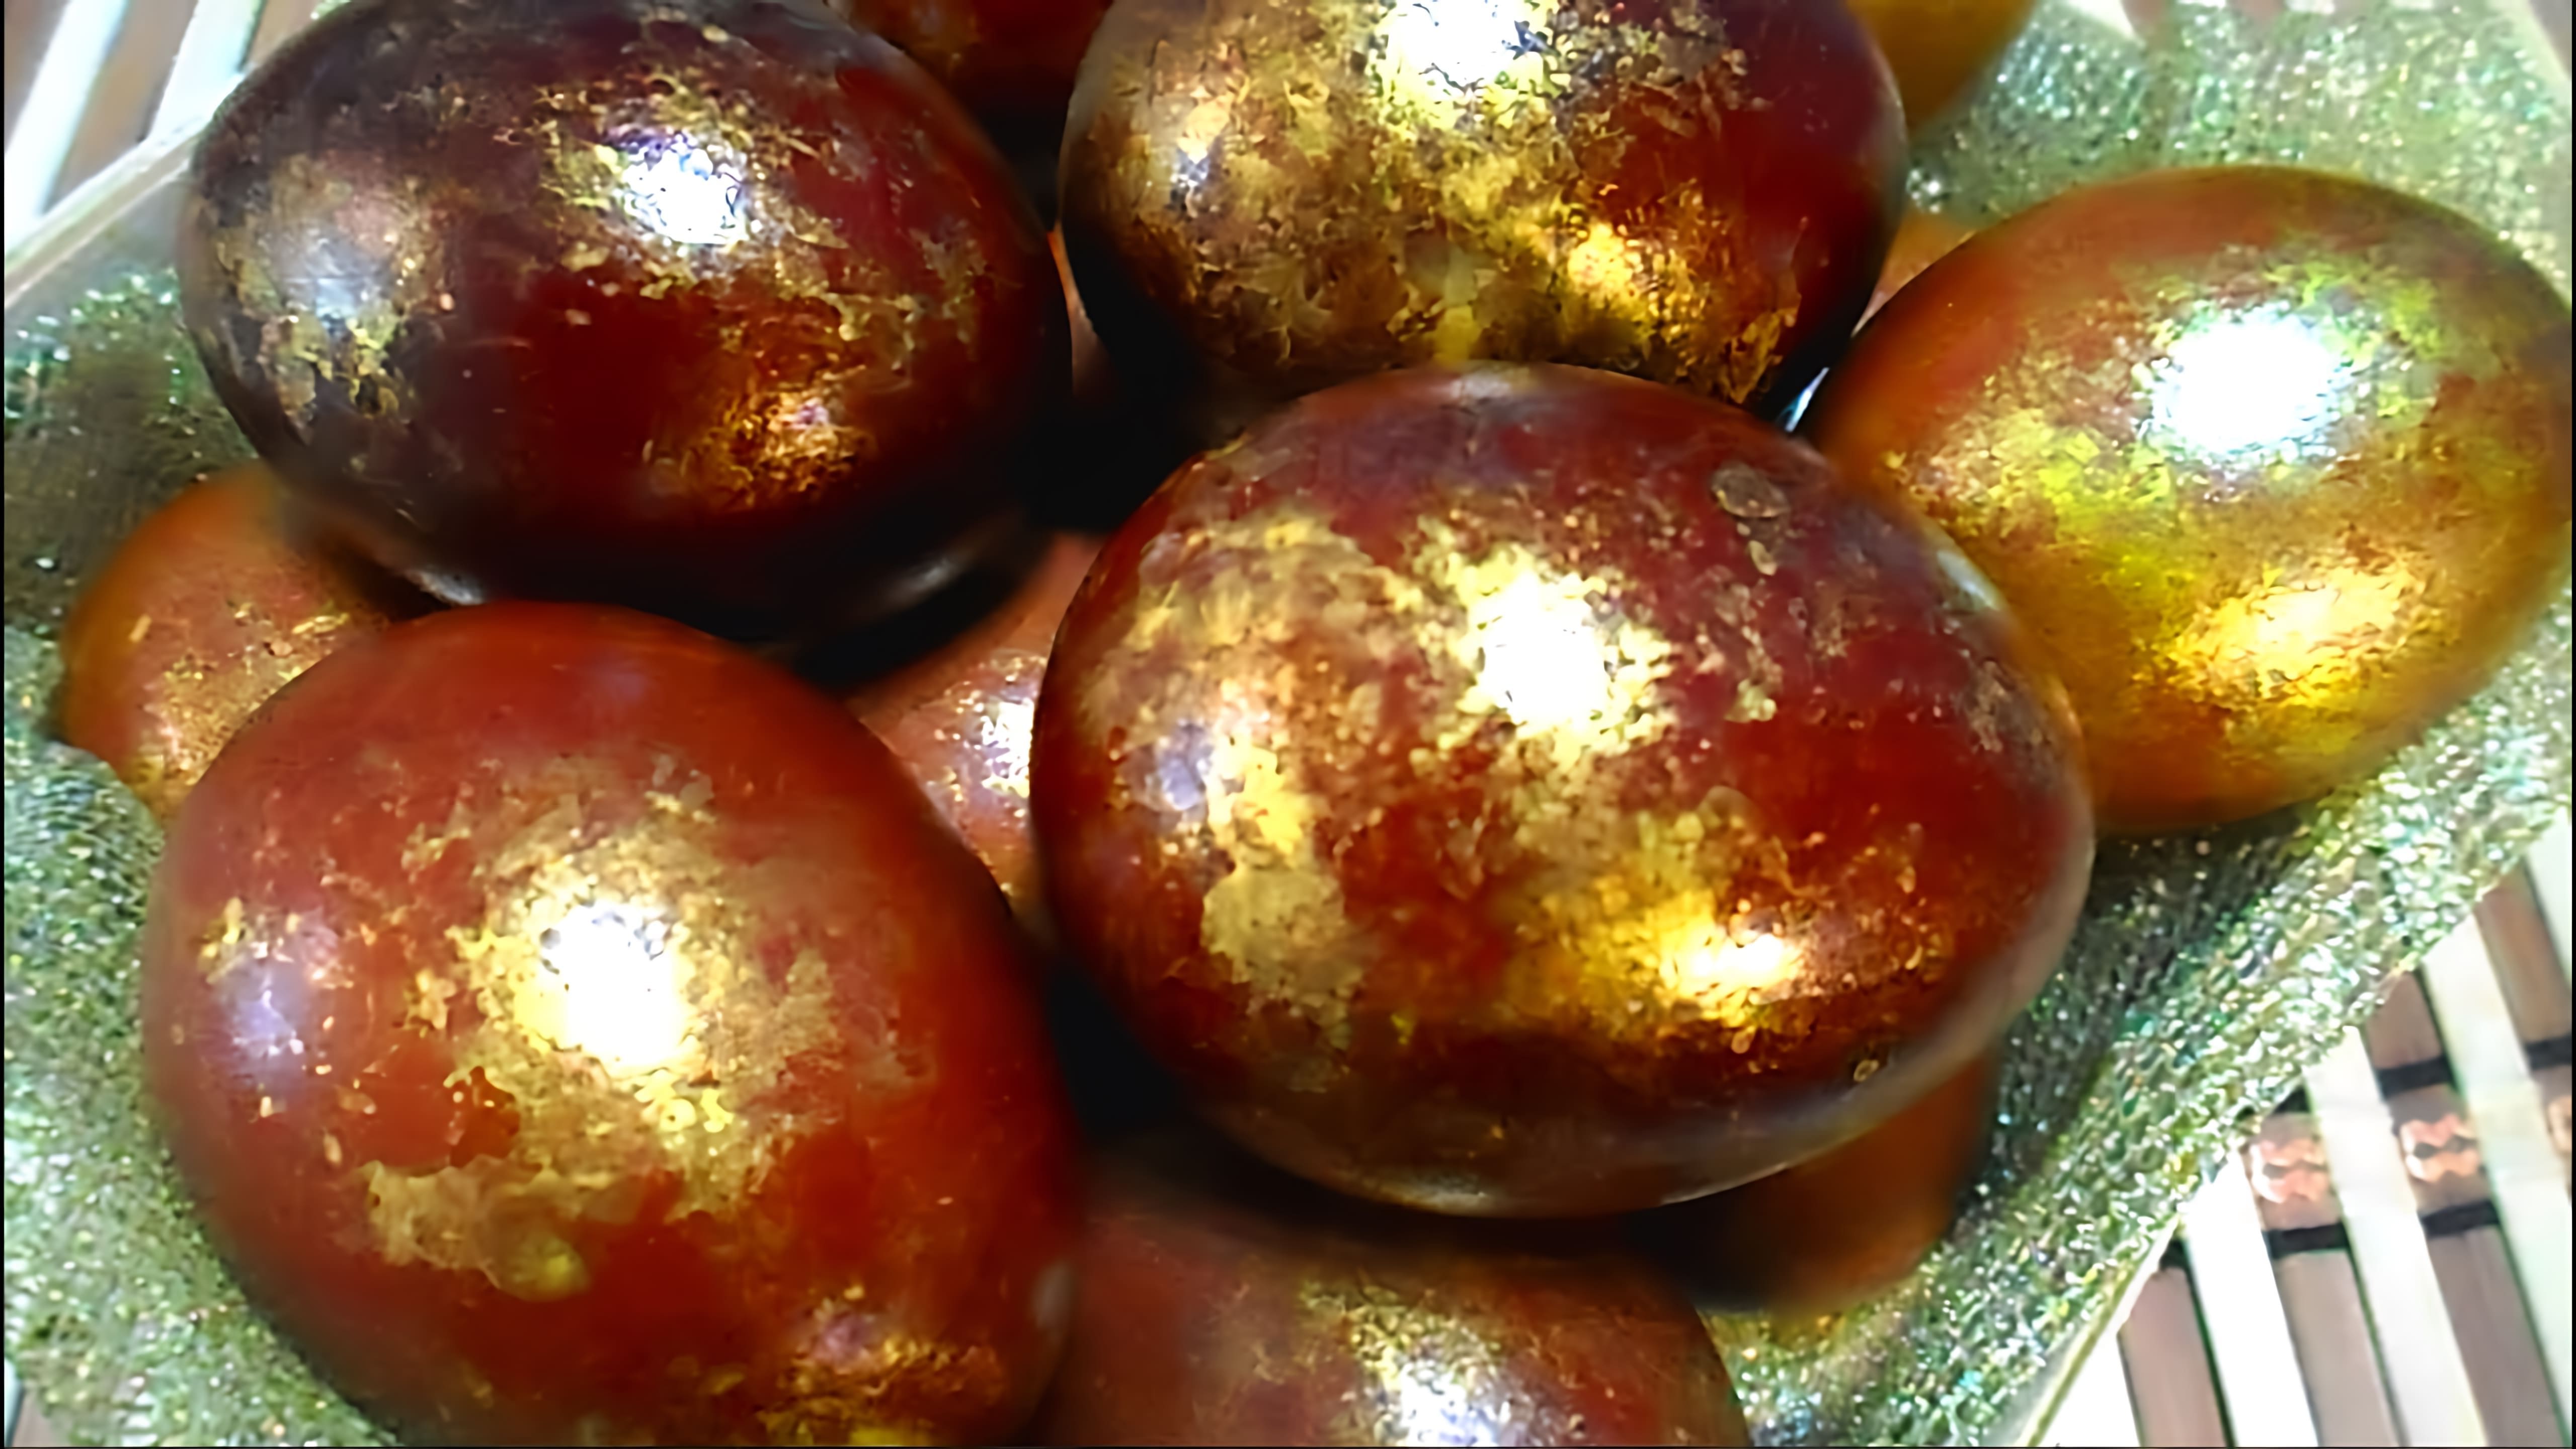 В этом видео демонстрируется процесс окрашивания яиц на Пасху в луковой шелухе с использованием желатинового красителя для получения золотистого эффекта